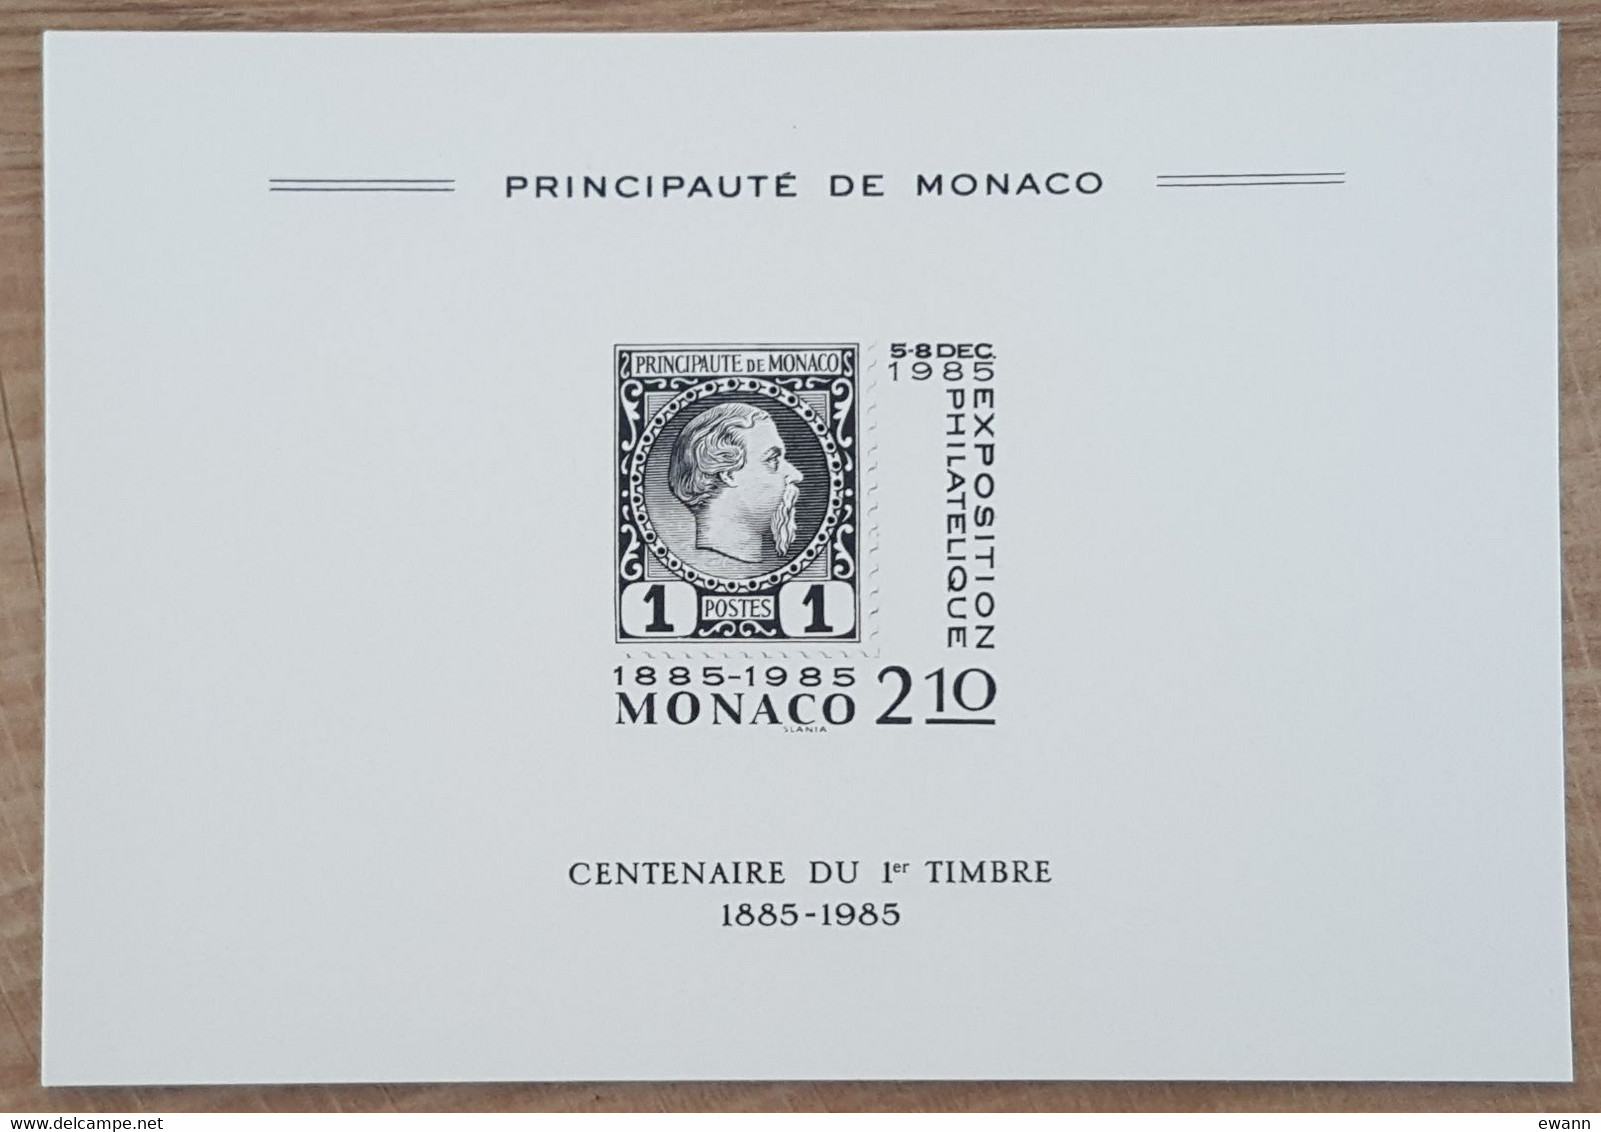 Monaco - YT N°1457 - EPREUVE SOUVENIR - Exposition Philatélique - 1985 - Covers & Documents